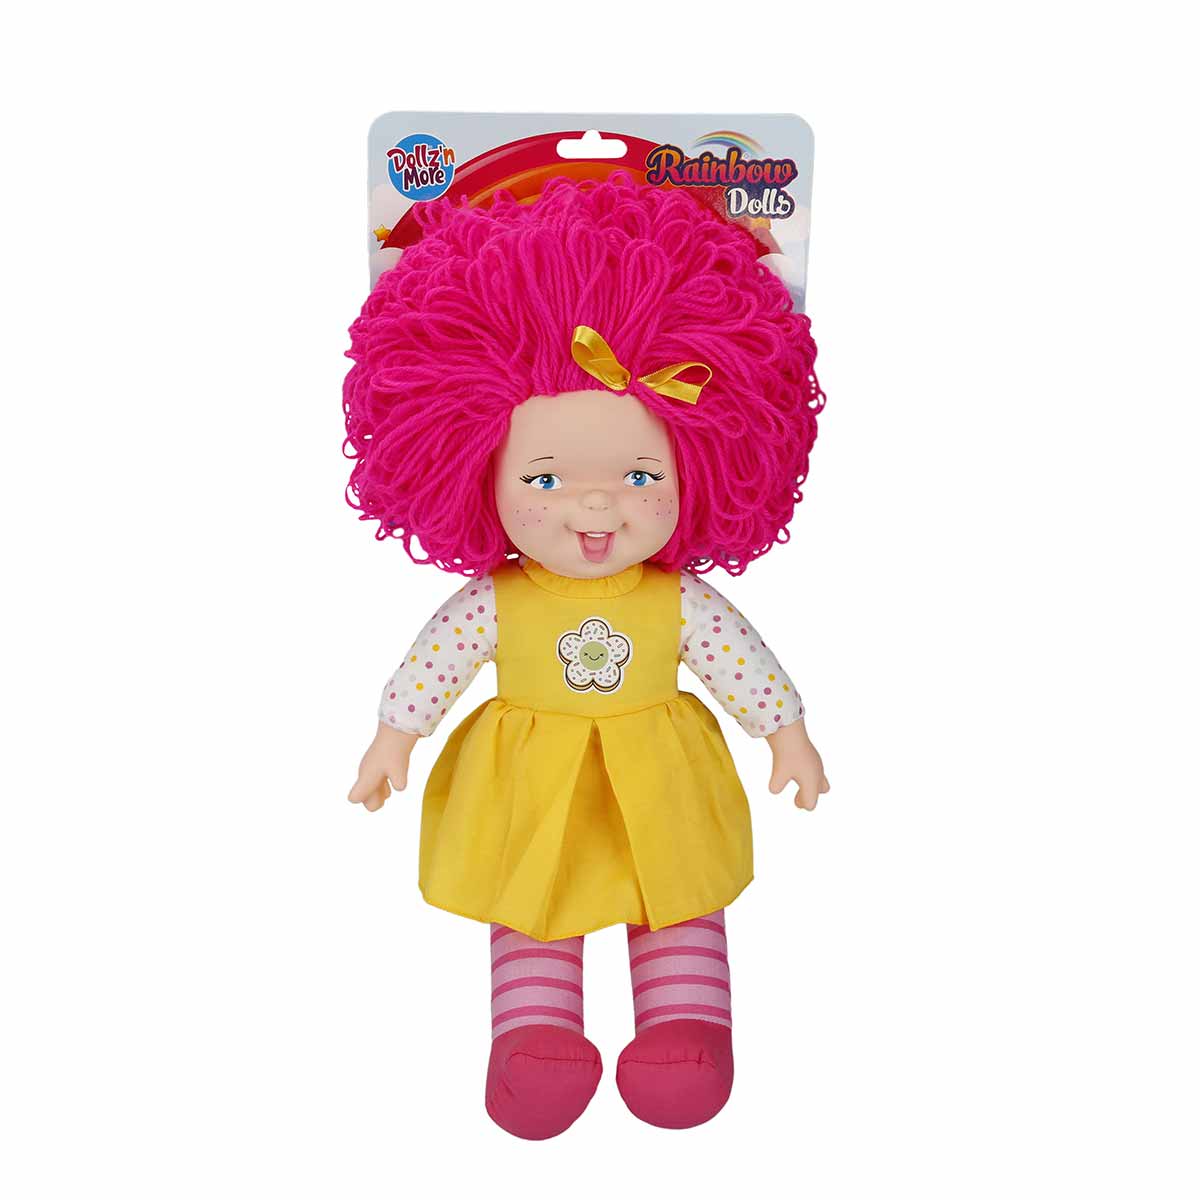 Papusa Rainbow Dolls, Dollzn More, cu par roz, 45 cm Dollz n More imagine 2022